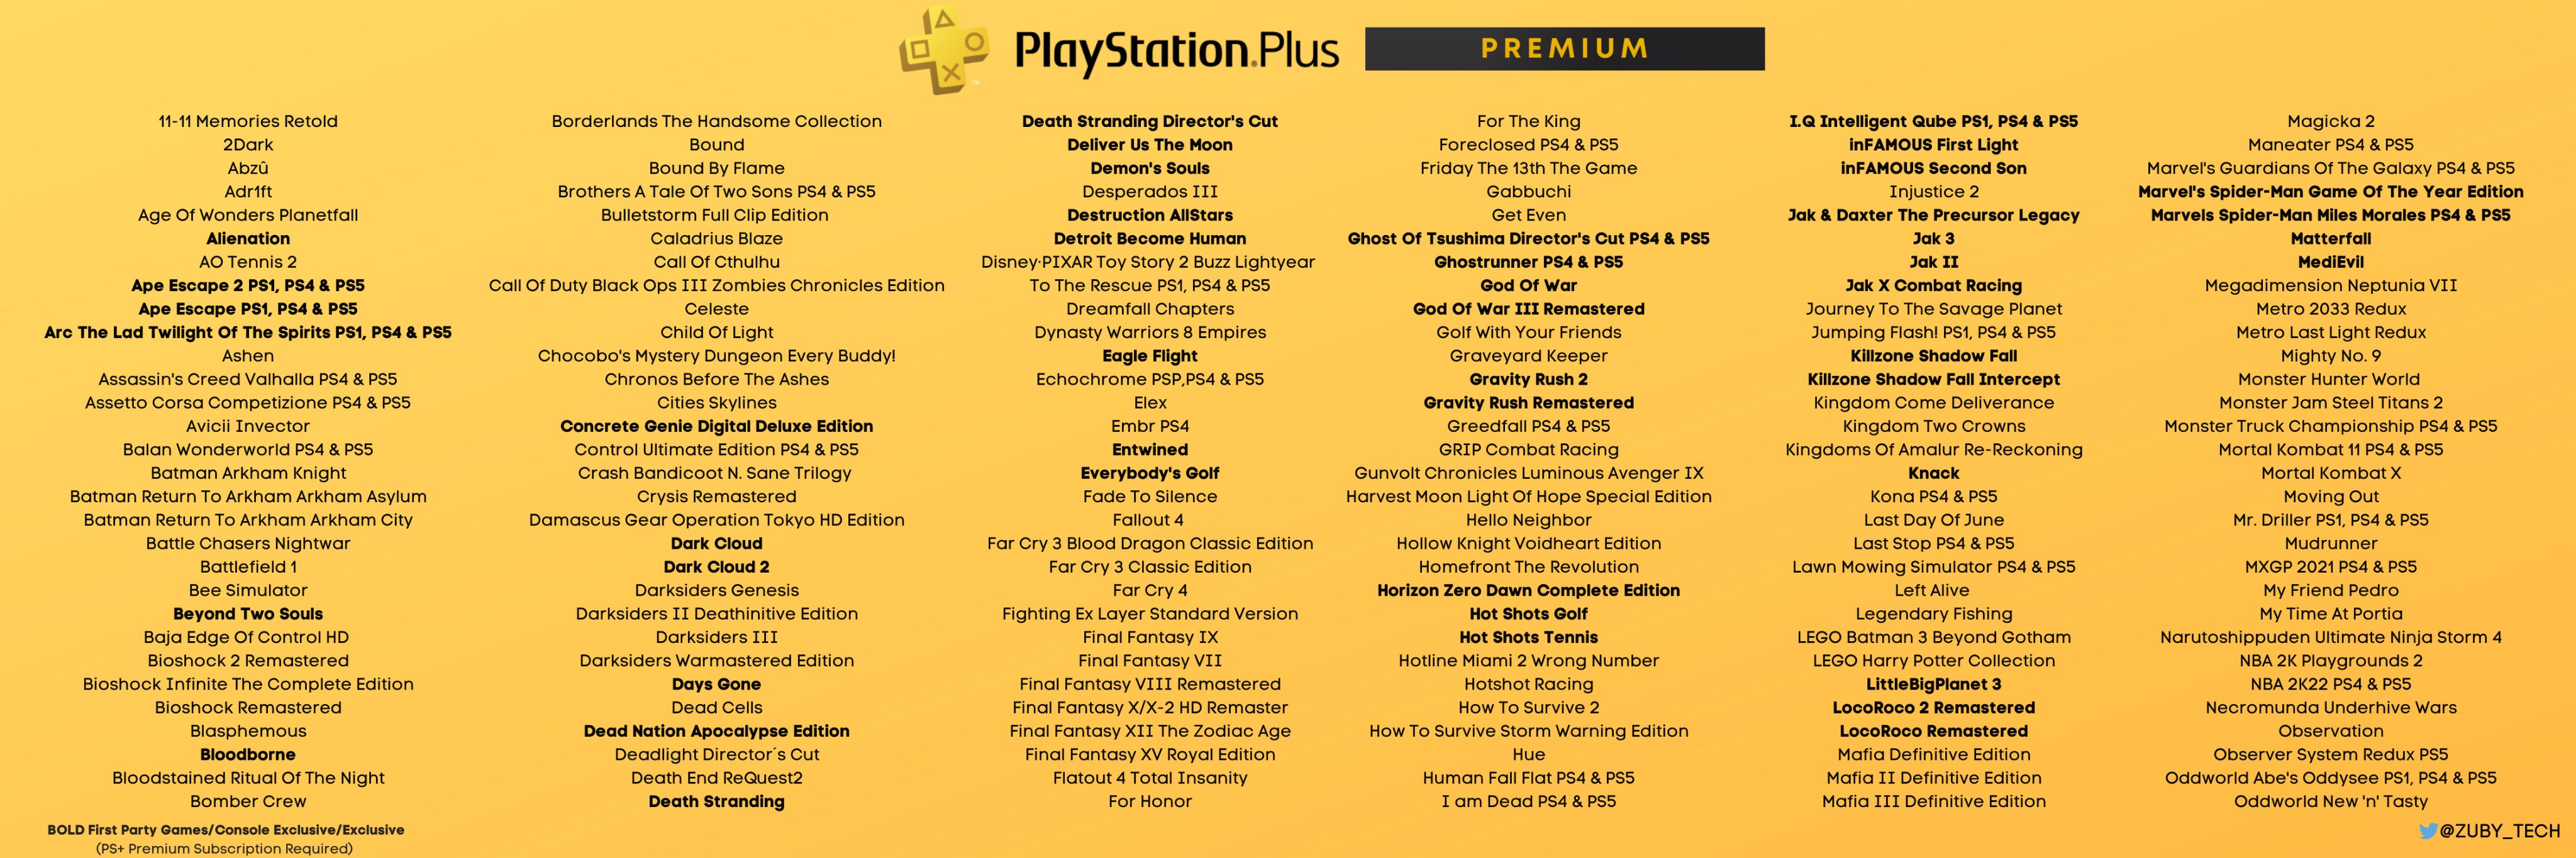 Zuby_Tech on Plus Premium Full List: #PlayStationPlus #PSPlus #PlayStation #PlayStation5 #PS5 https://t.co/dwBg2vKYkL" / Twitter